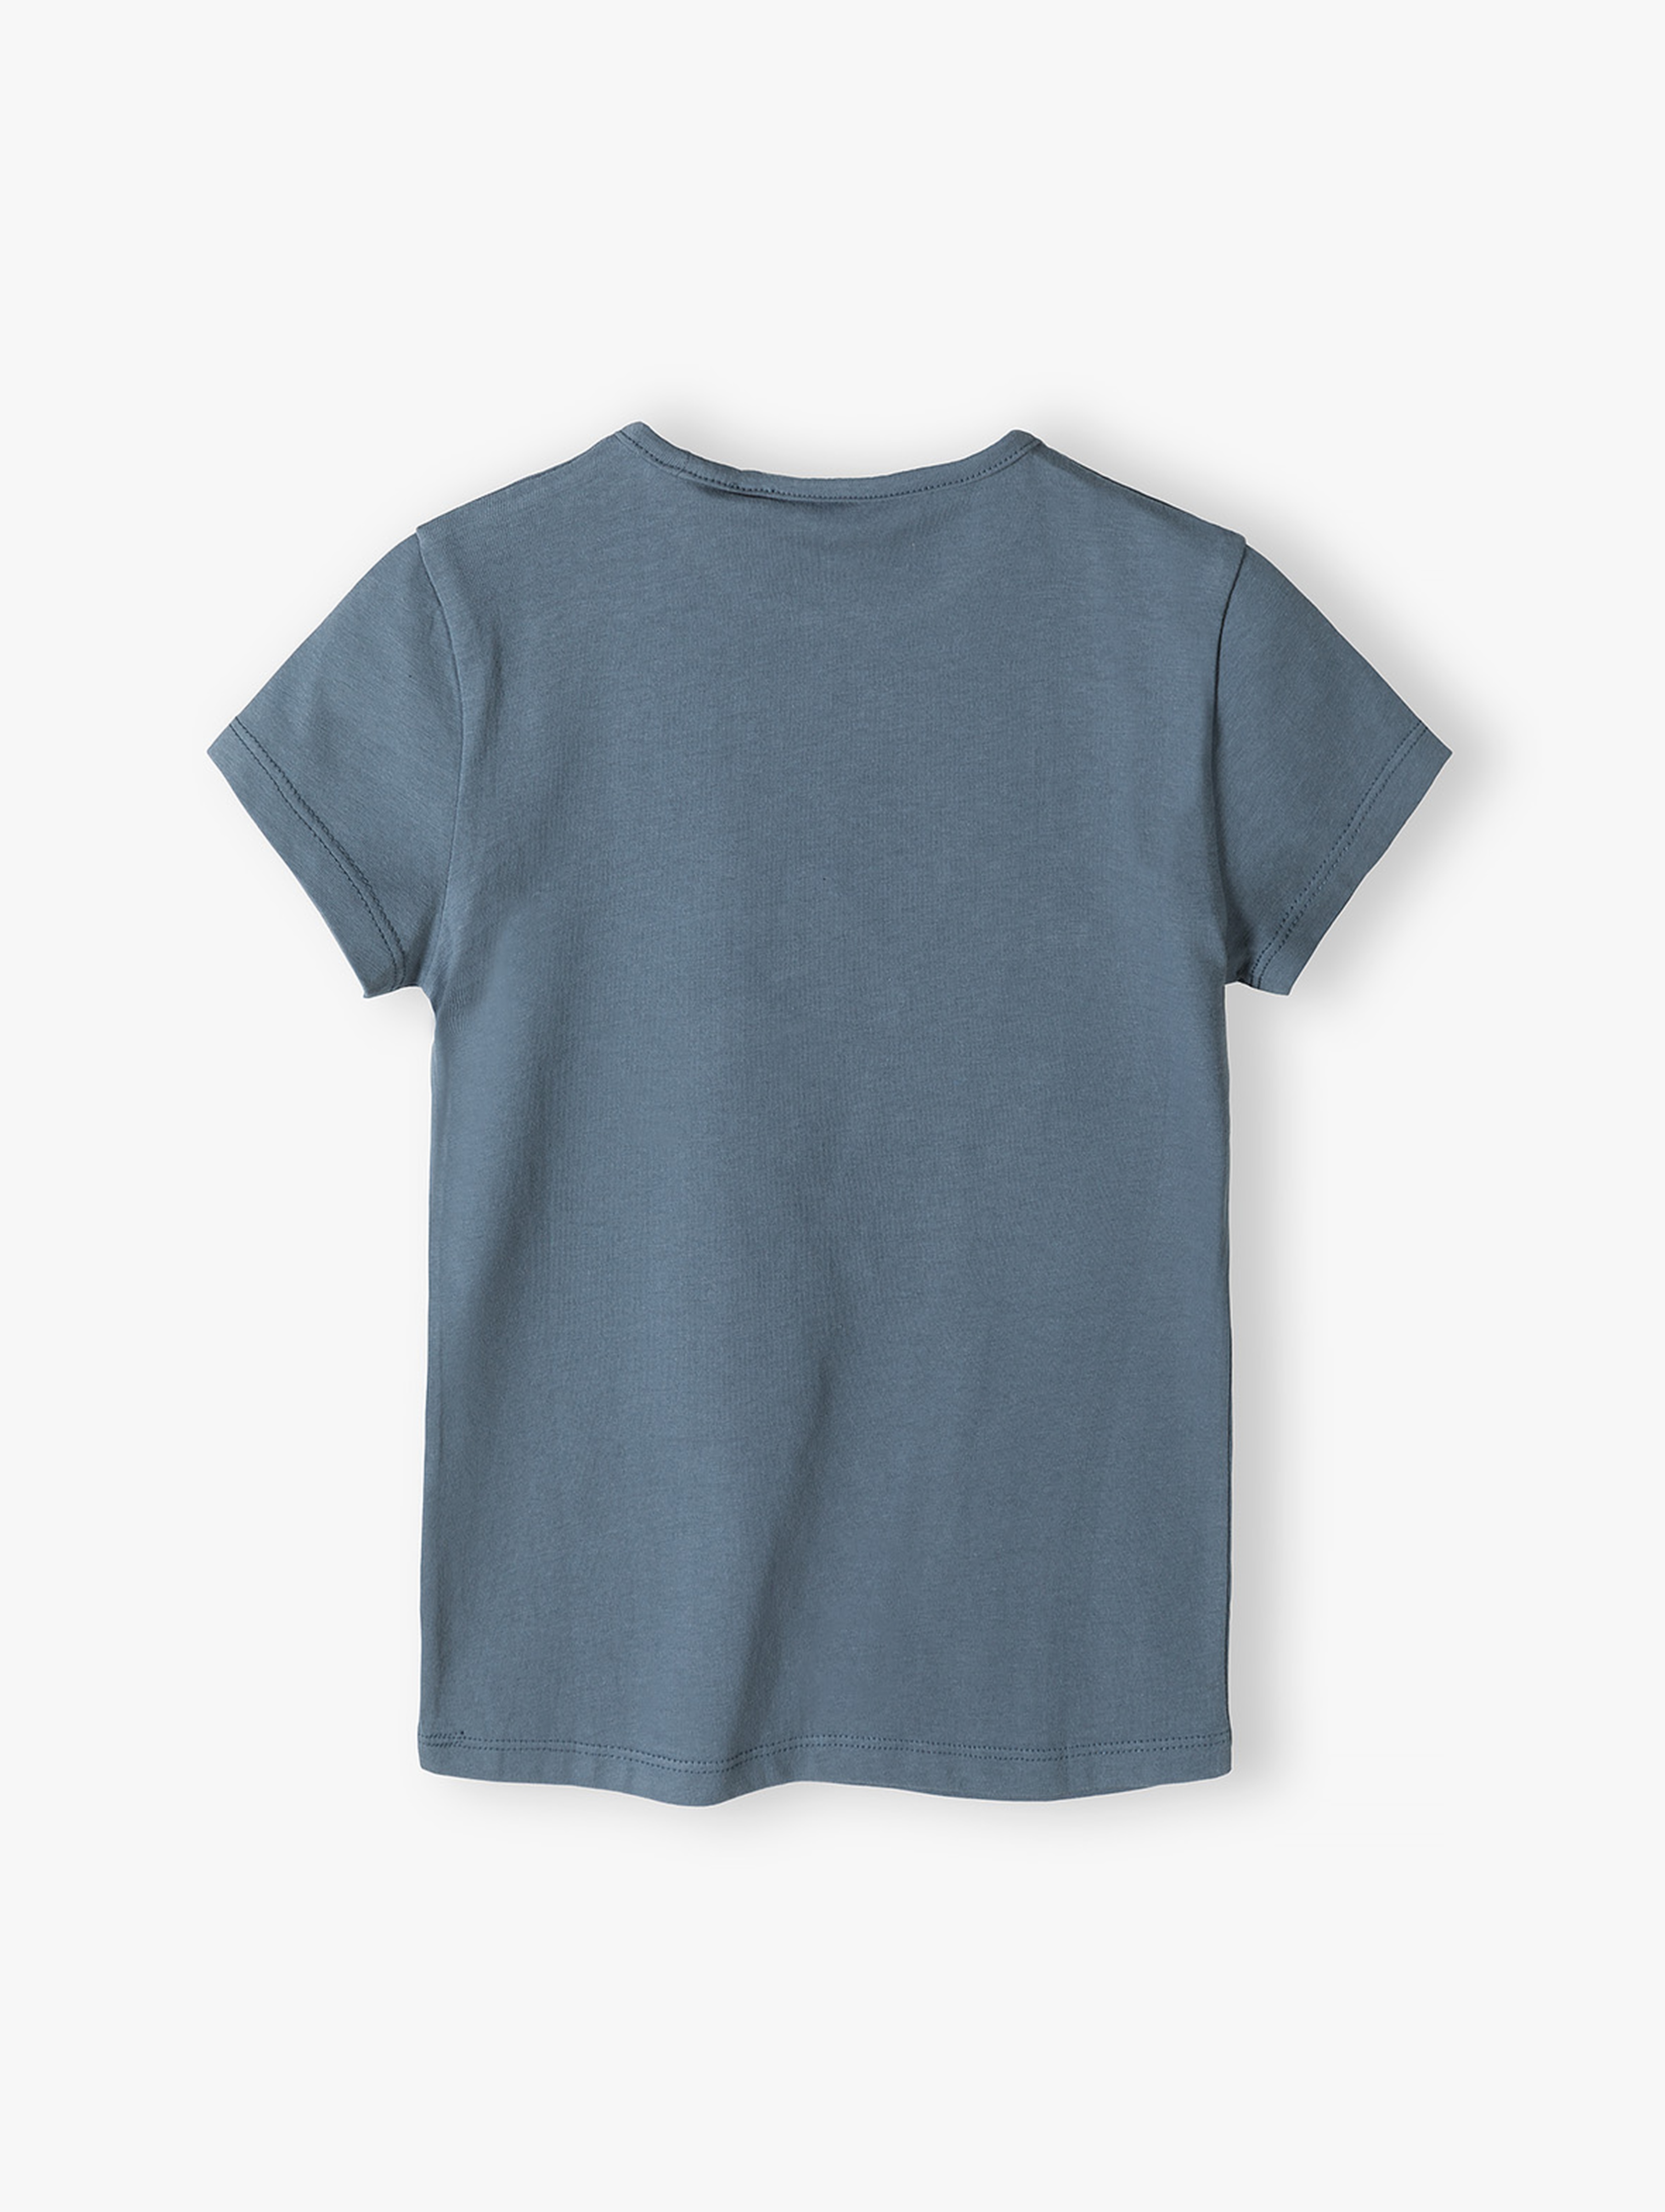 Niebieska koszulka dla dziewczynki z jednorożcem